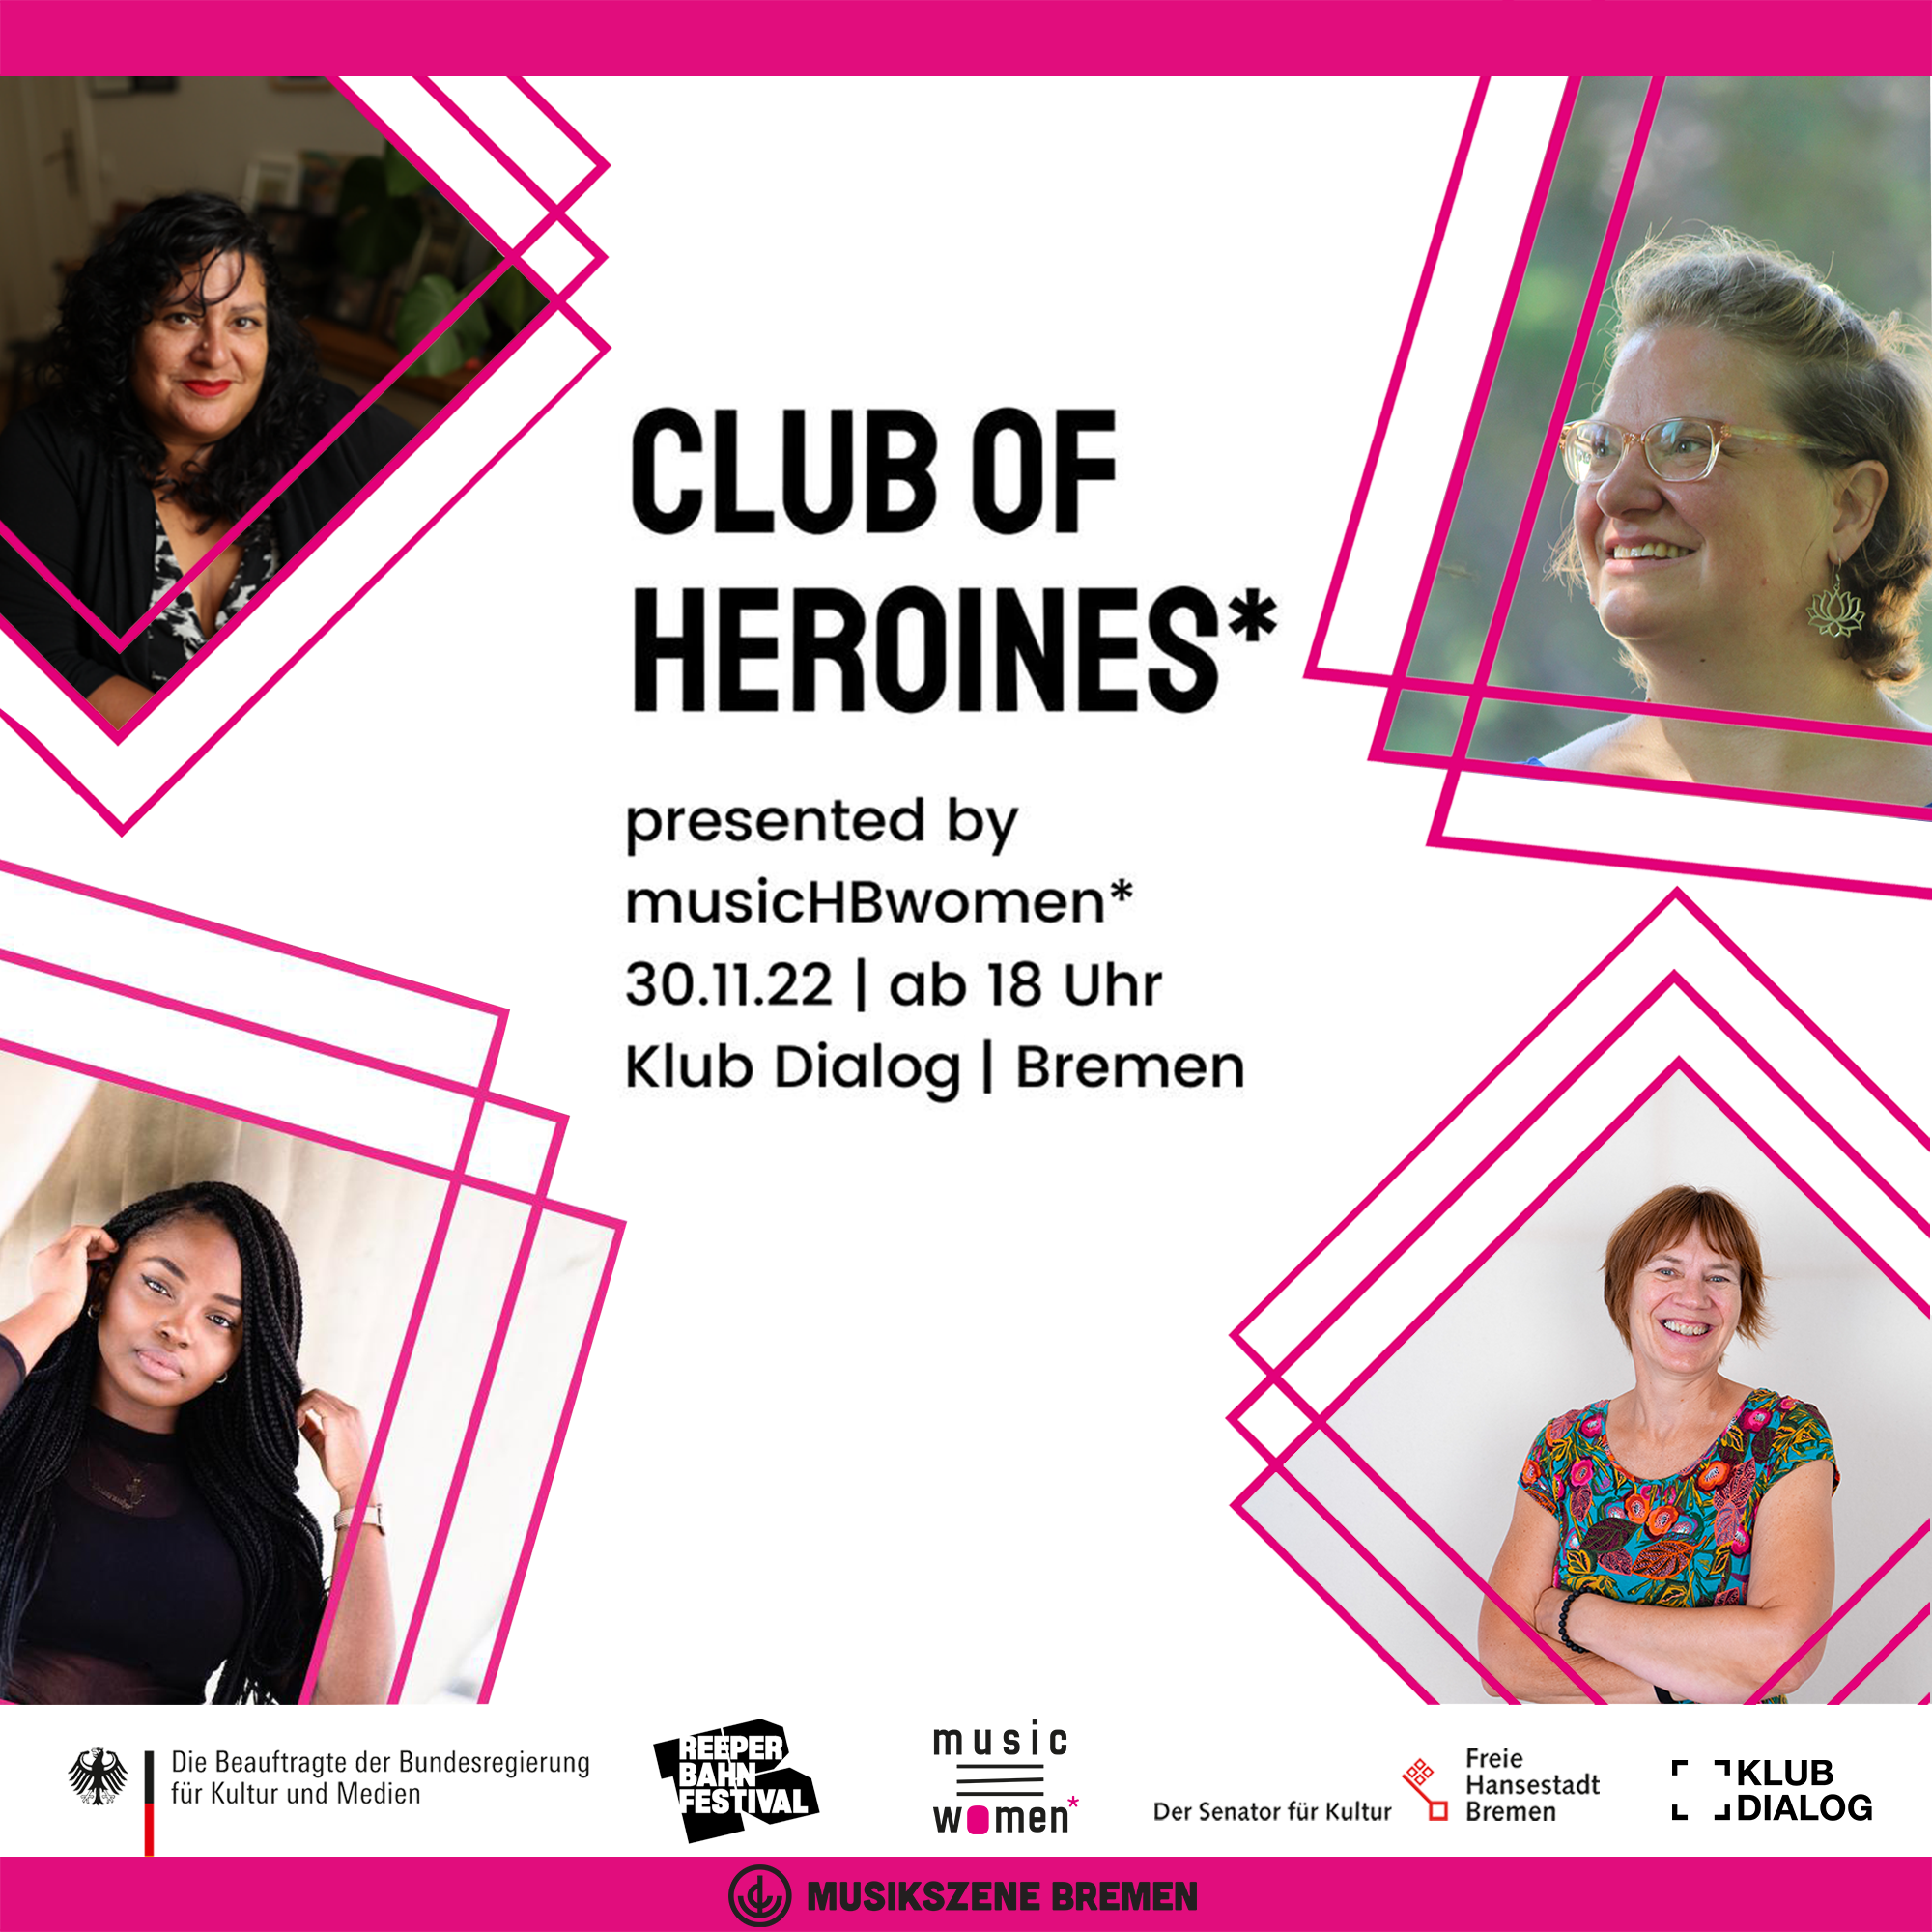 Club of Heroines - Ein Meet-Up von musicHBwomen*  am 30.11.2022 | Bremen